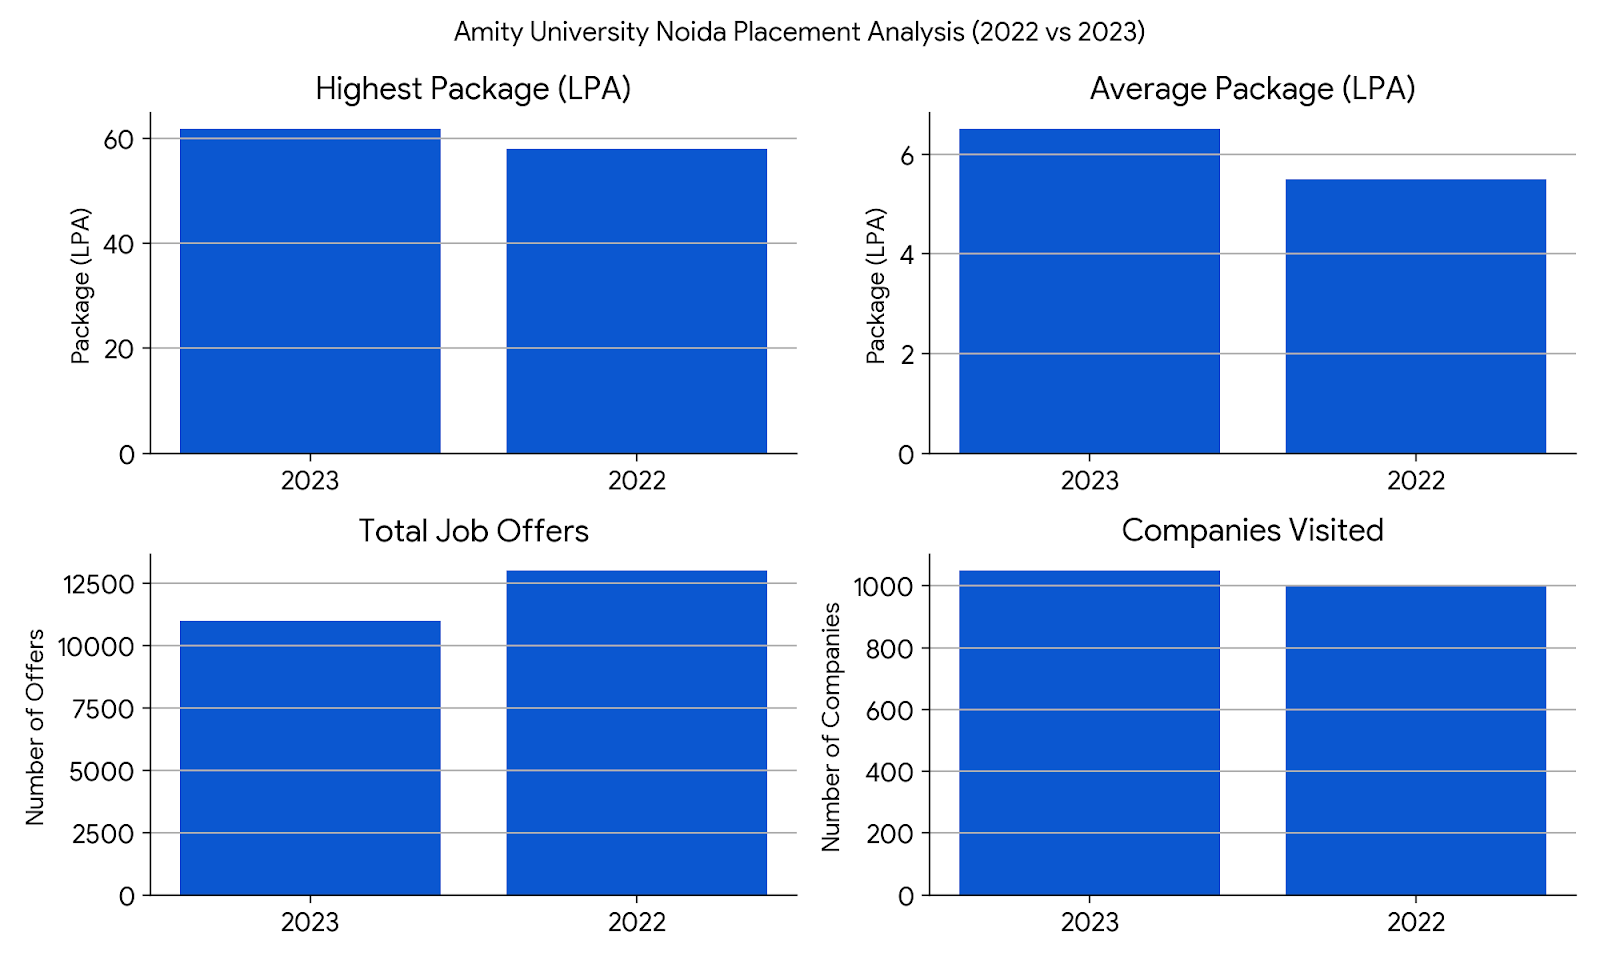 Amity University Noida Placement Comparison 2023 vs 2022